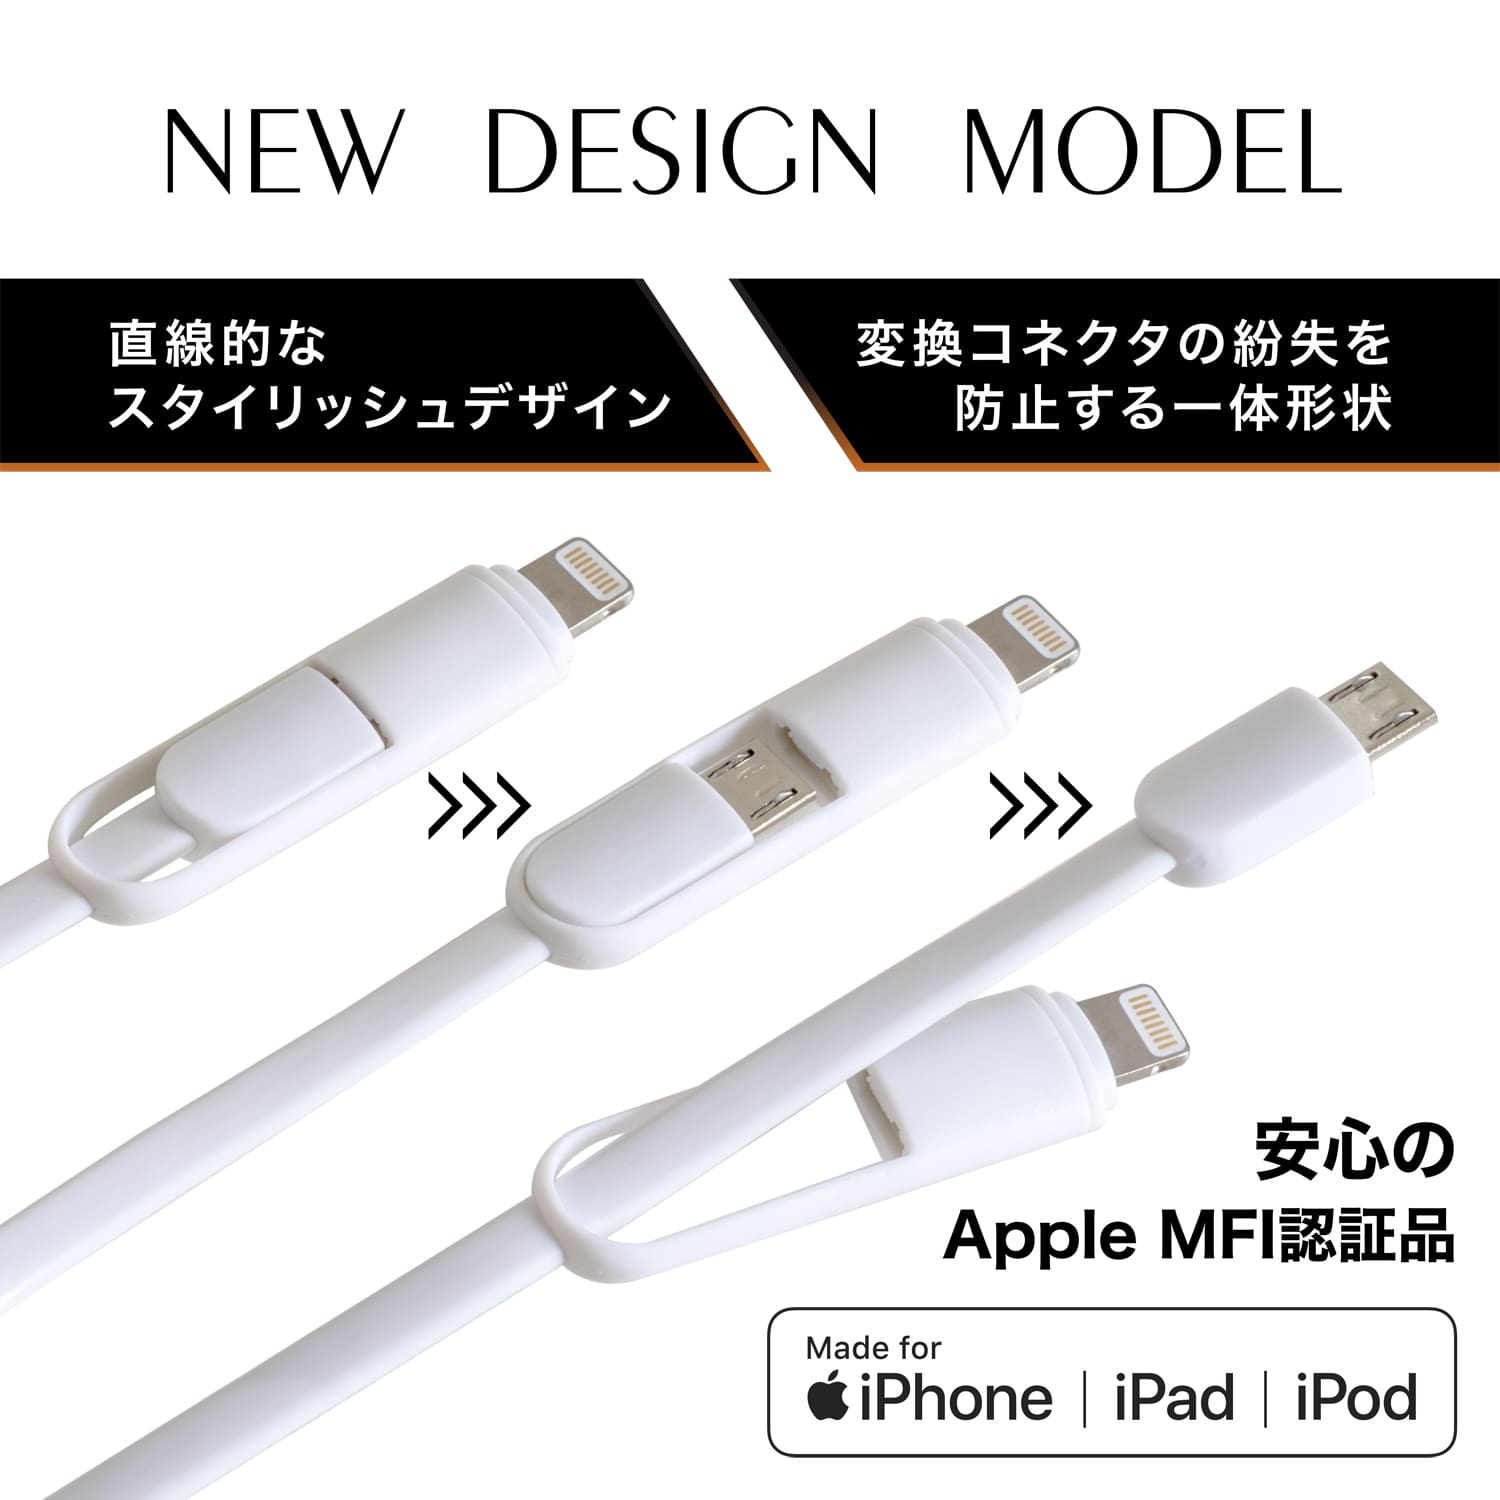 絶妙なデザイン Apple変換カプラー sushitai.com.mx